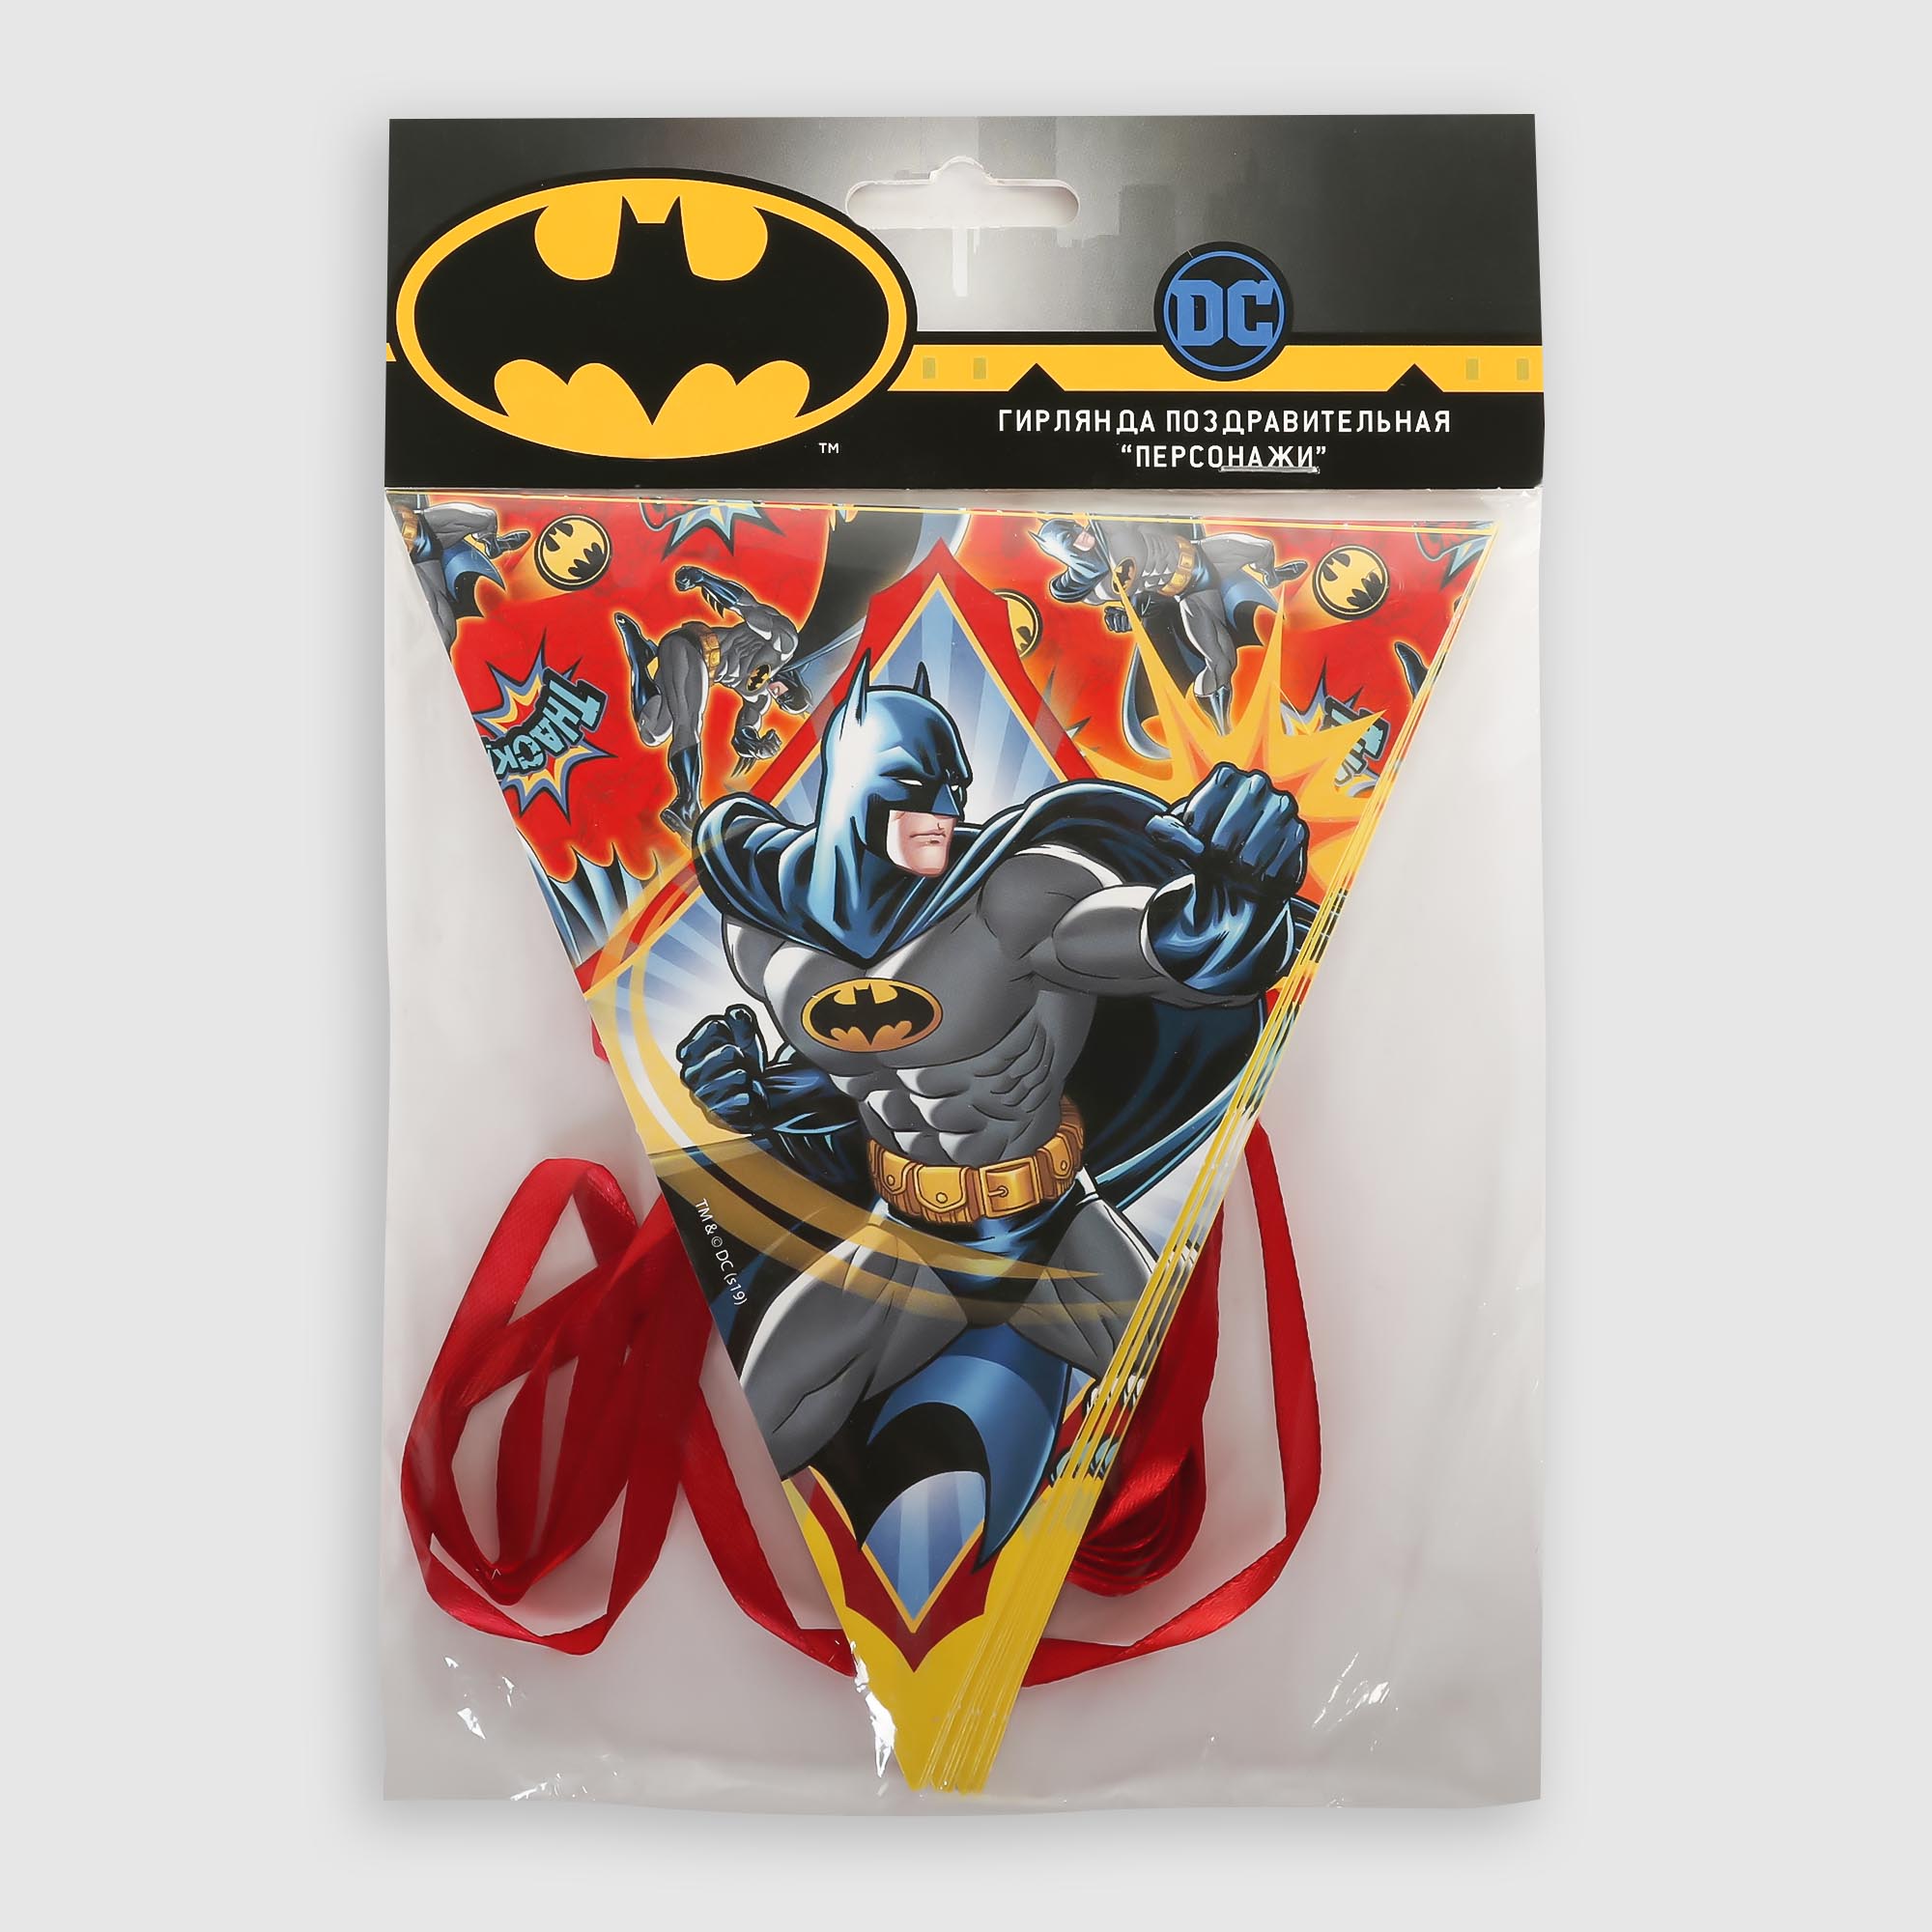 Гирлянда поздравительная ND Play персонаж Batman гирлянда nd play batman с днем рождения